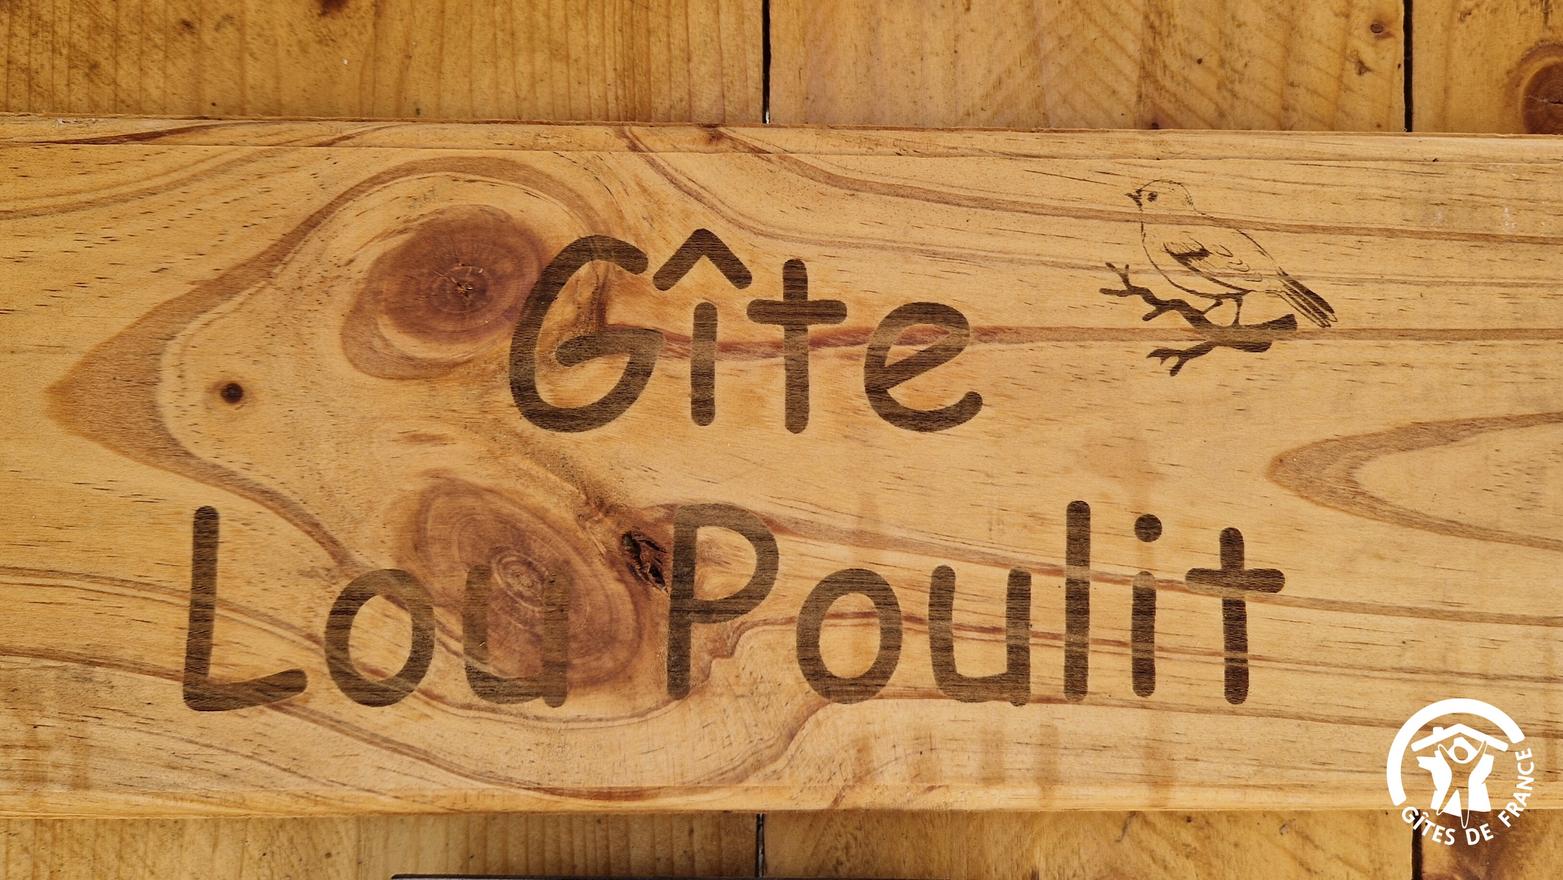 Lou Poulit à Le Garric